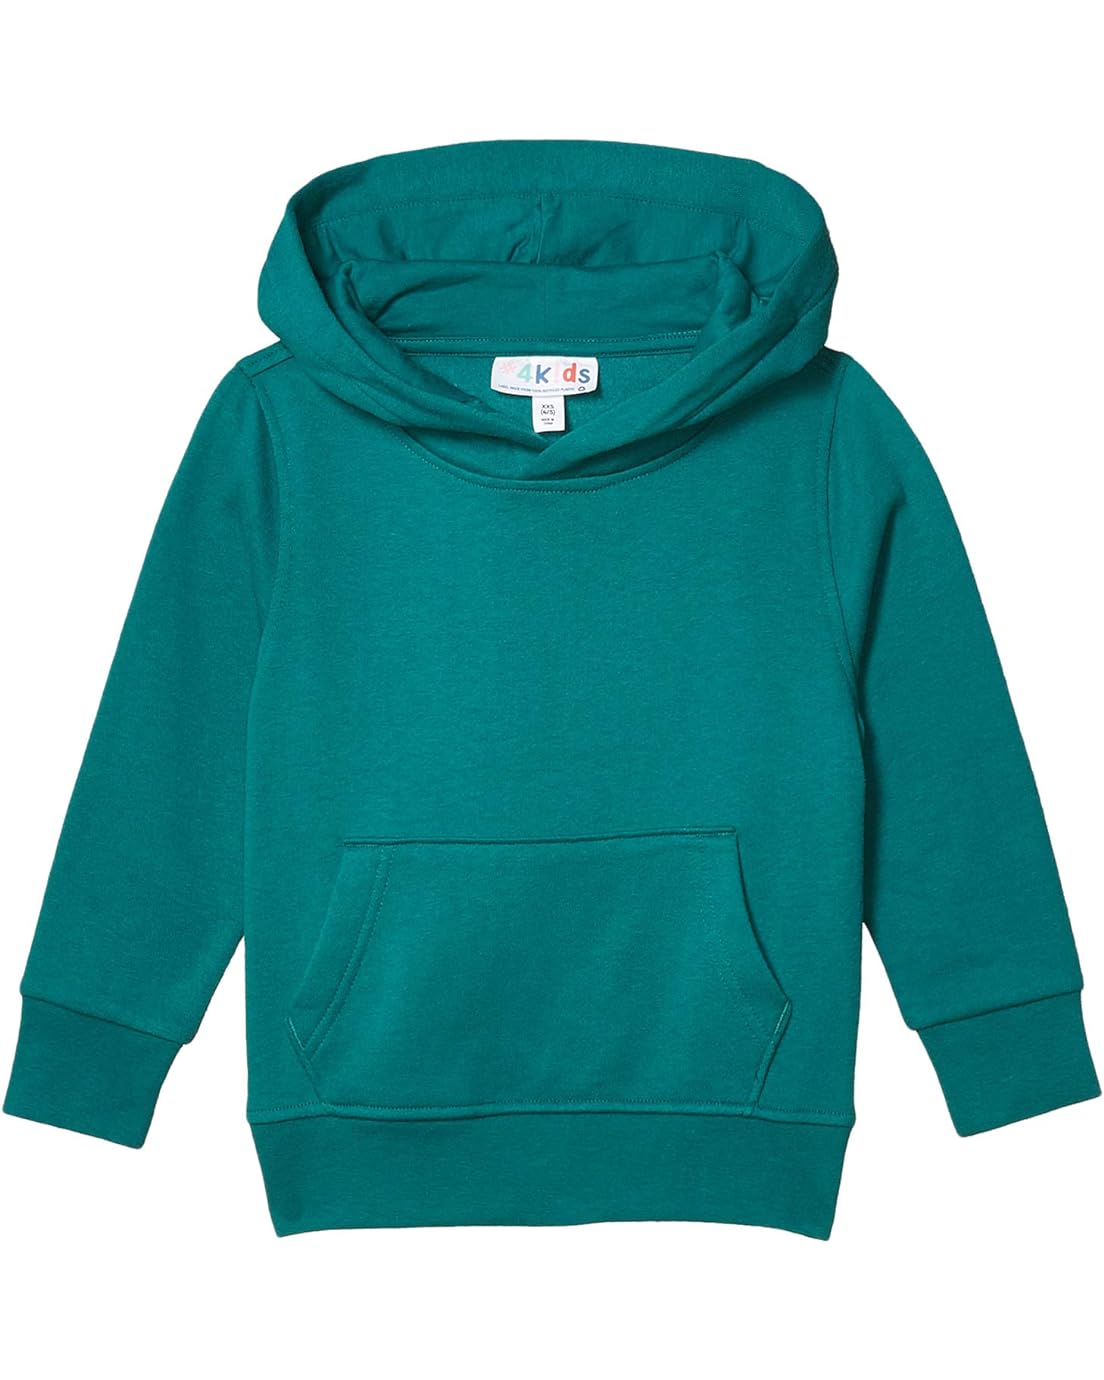 #4kids Essential Pullover Hoodie (Little Kids/Big Kids)